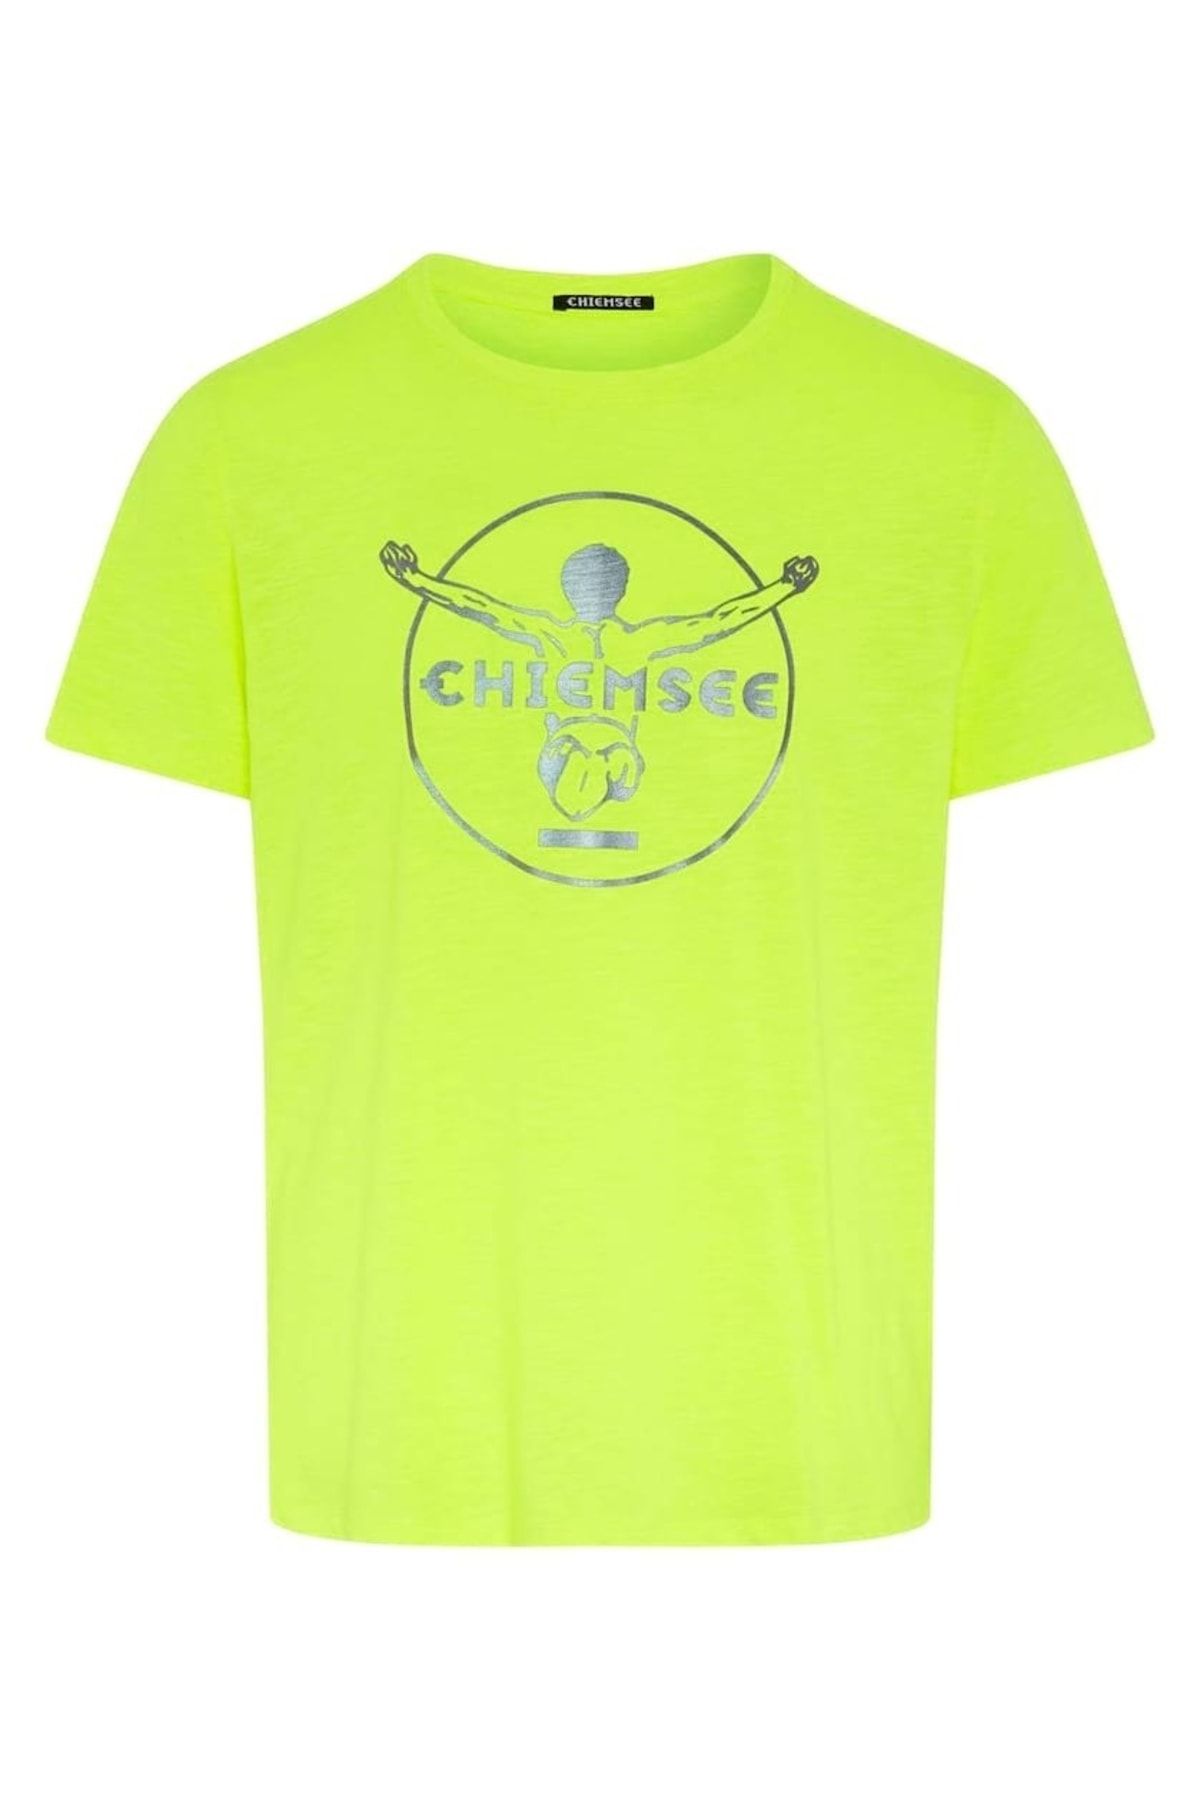 Chiemsee Herren T-Shirt - Oscar, - Bio-Baumwolle, Trendyol großes Logo, Rundhals, einfarbig